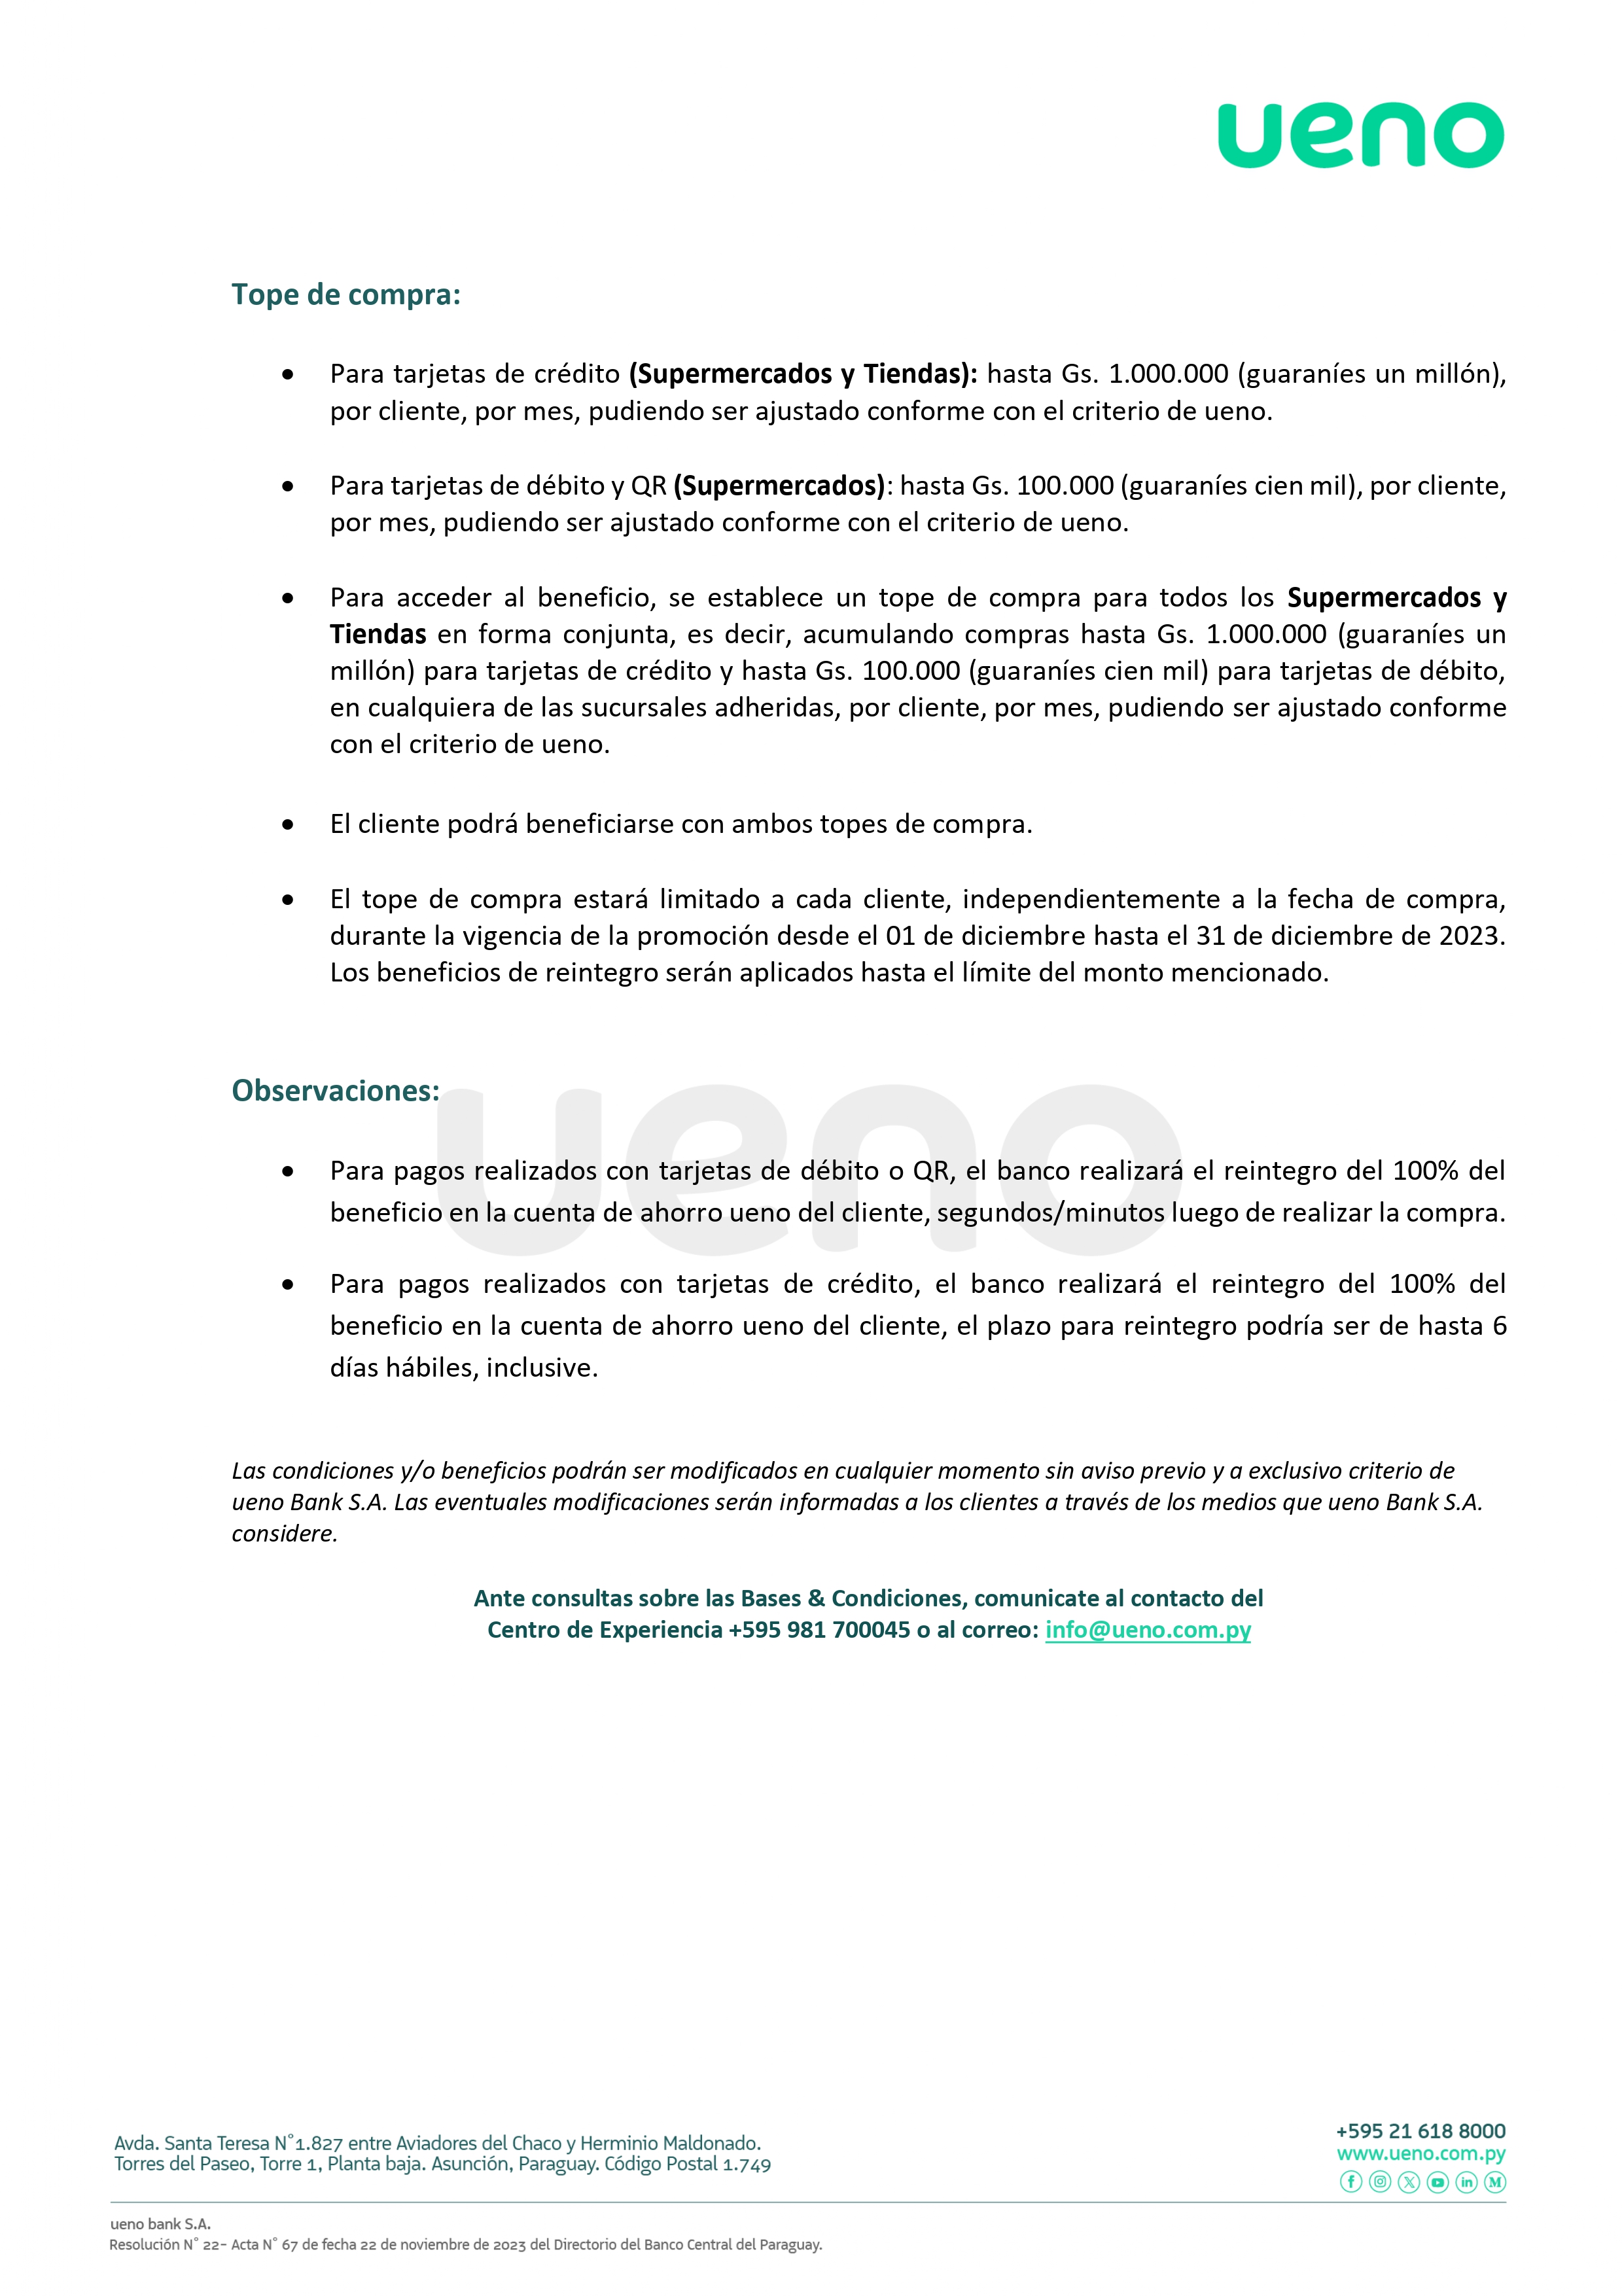 ByC - SUPERMERCADOS-TIENDAS- DICIEMBRE2023-MODIFICADO (1)_page-0002.jpg